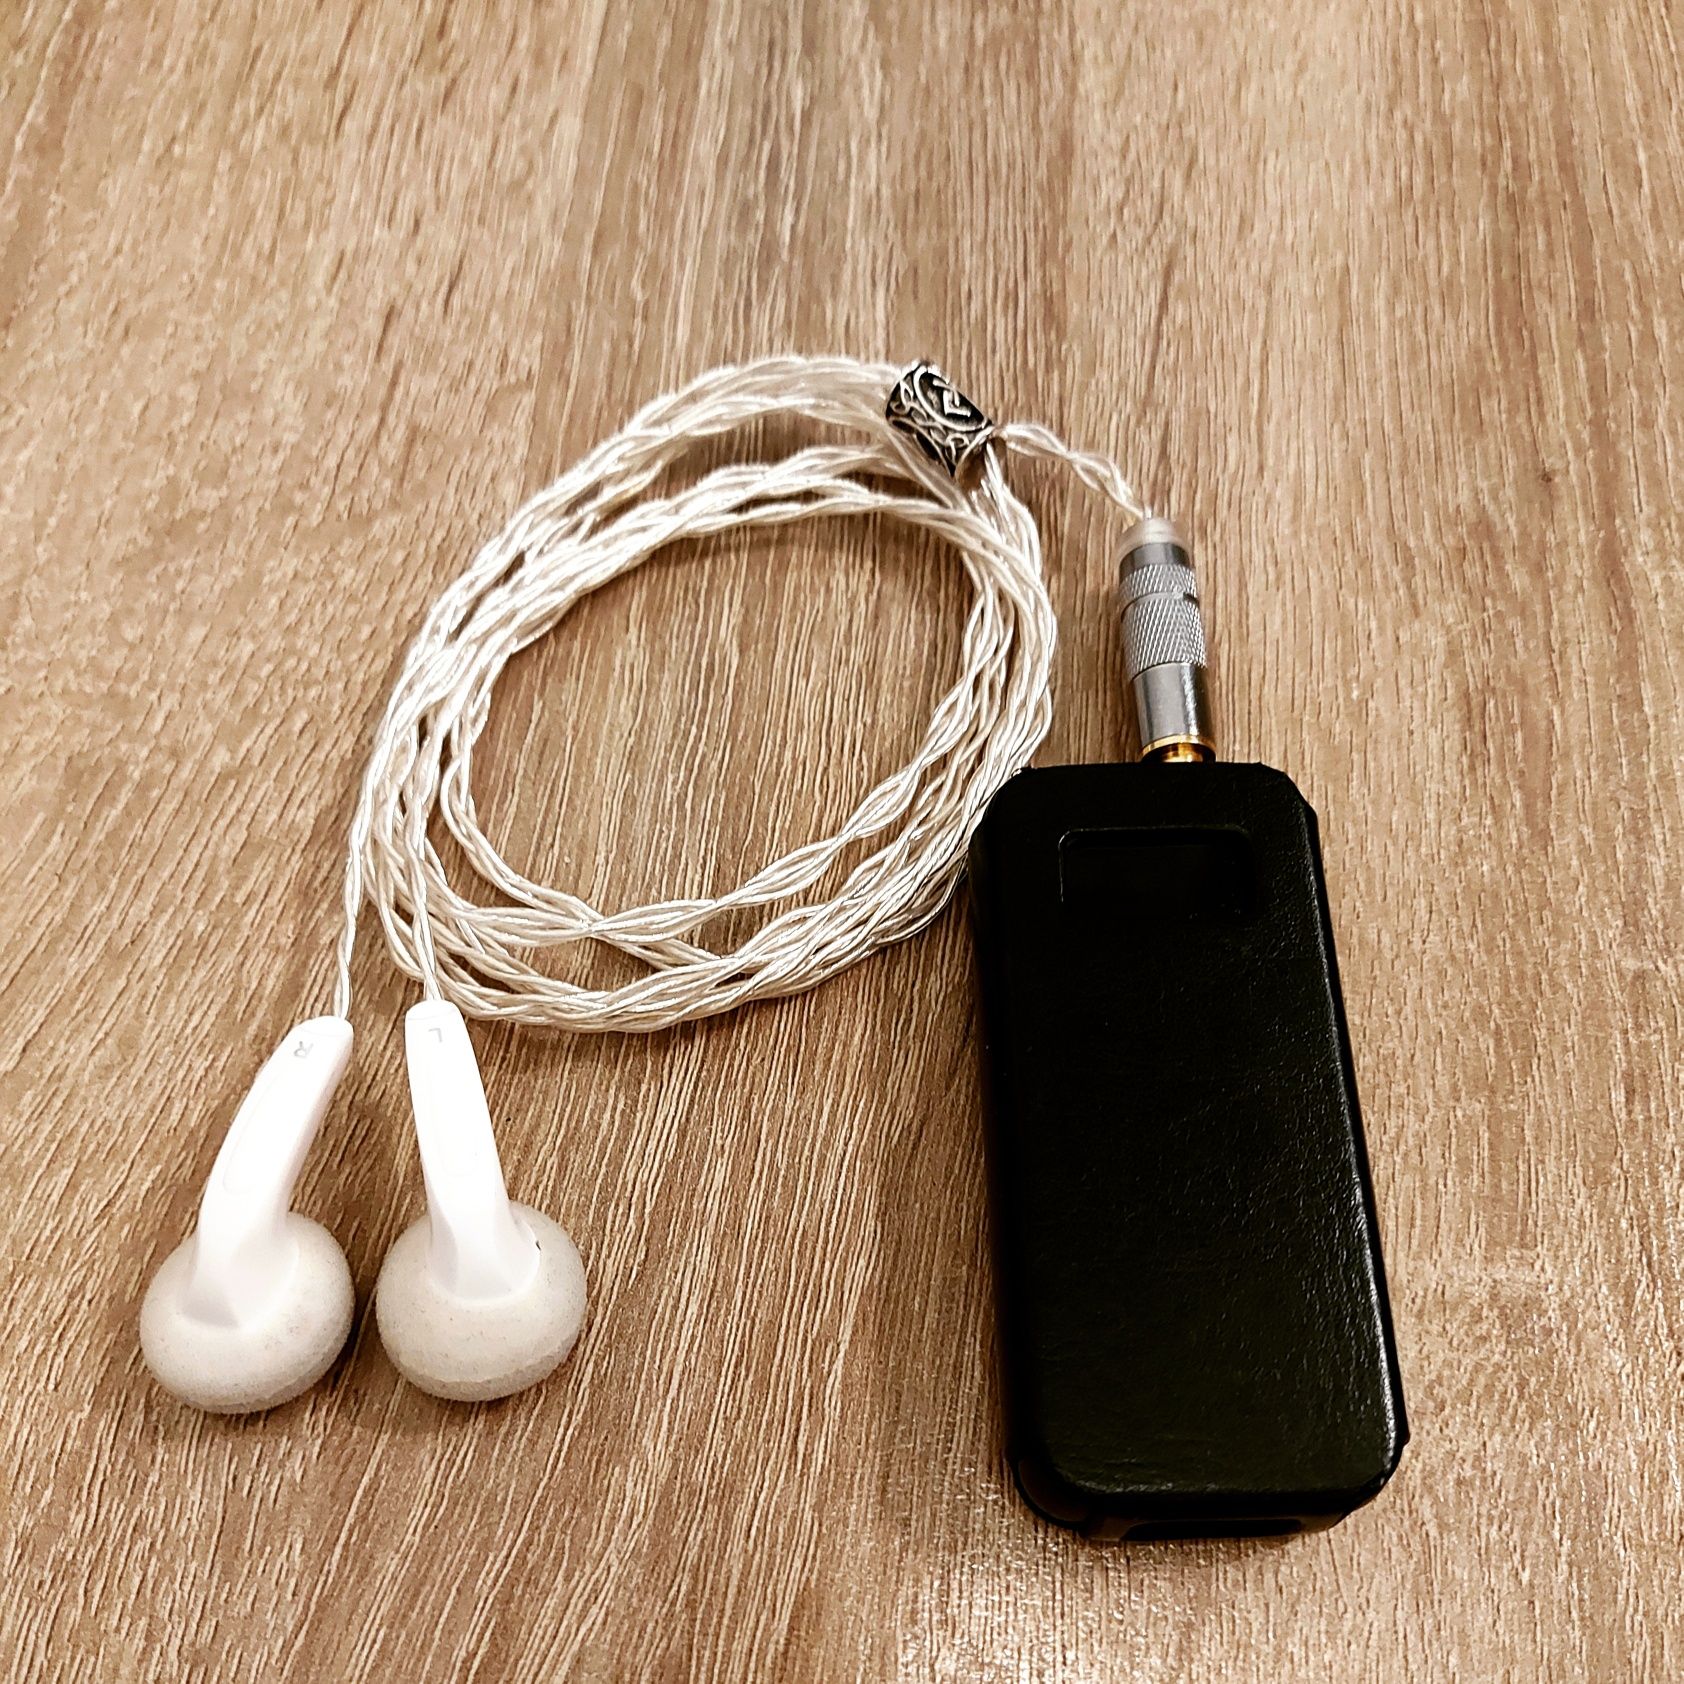 DIY custom casti tip earbuds (Fiio FF3, FF5)